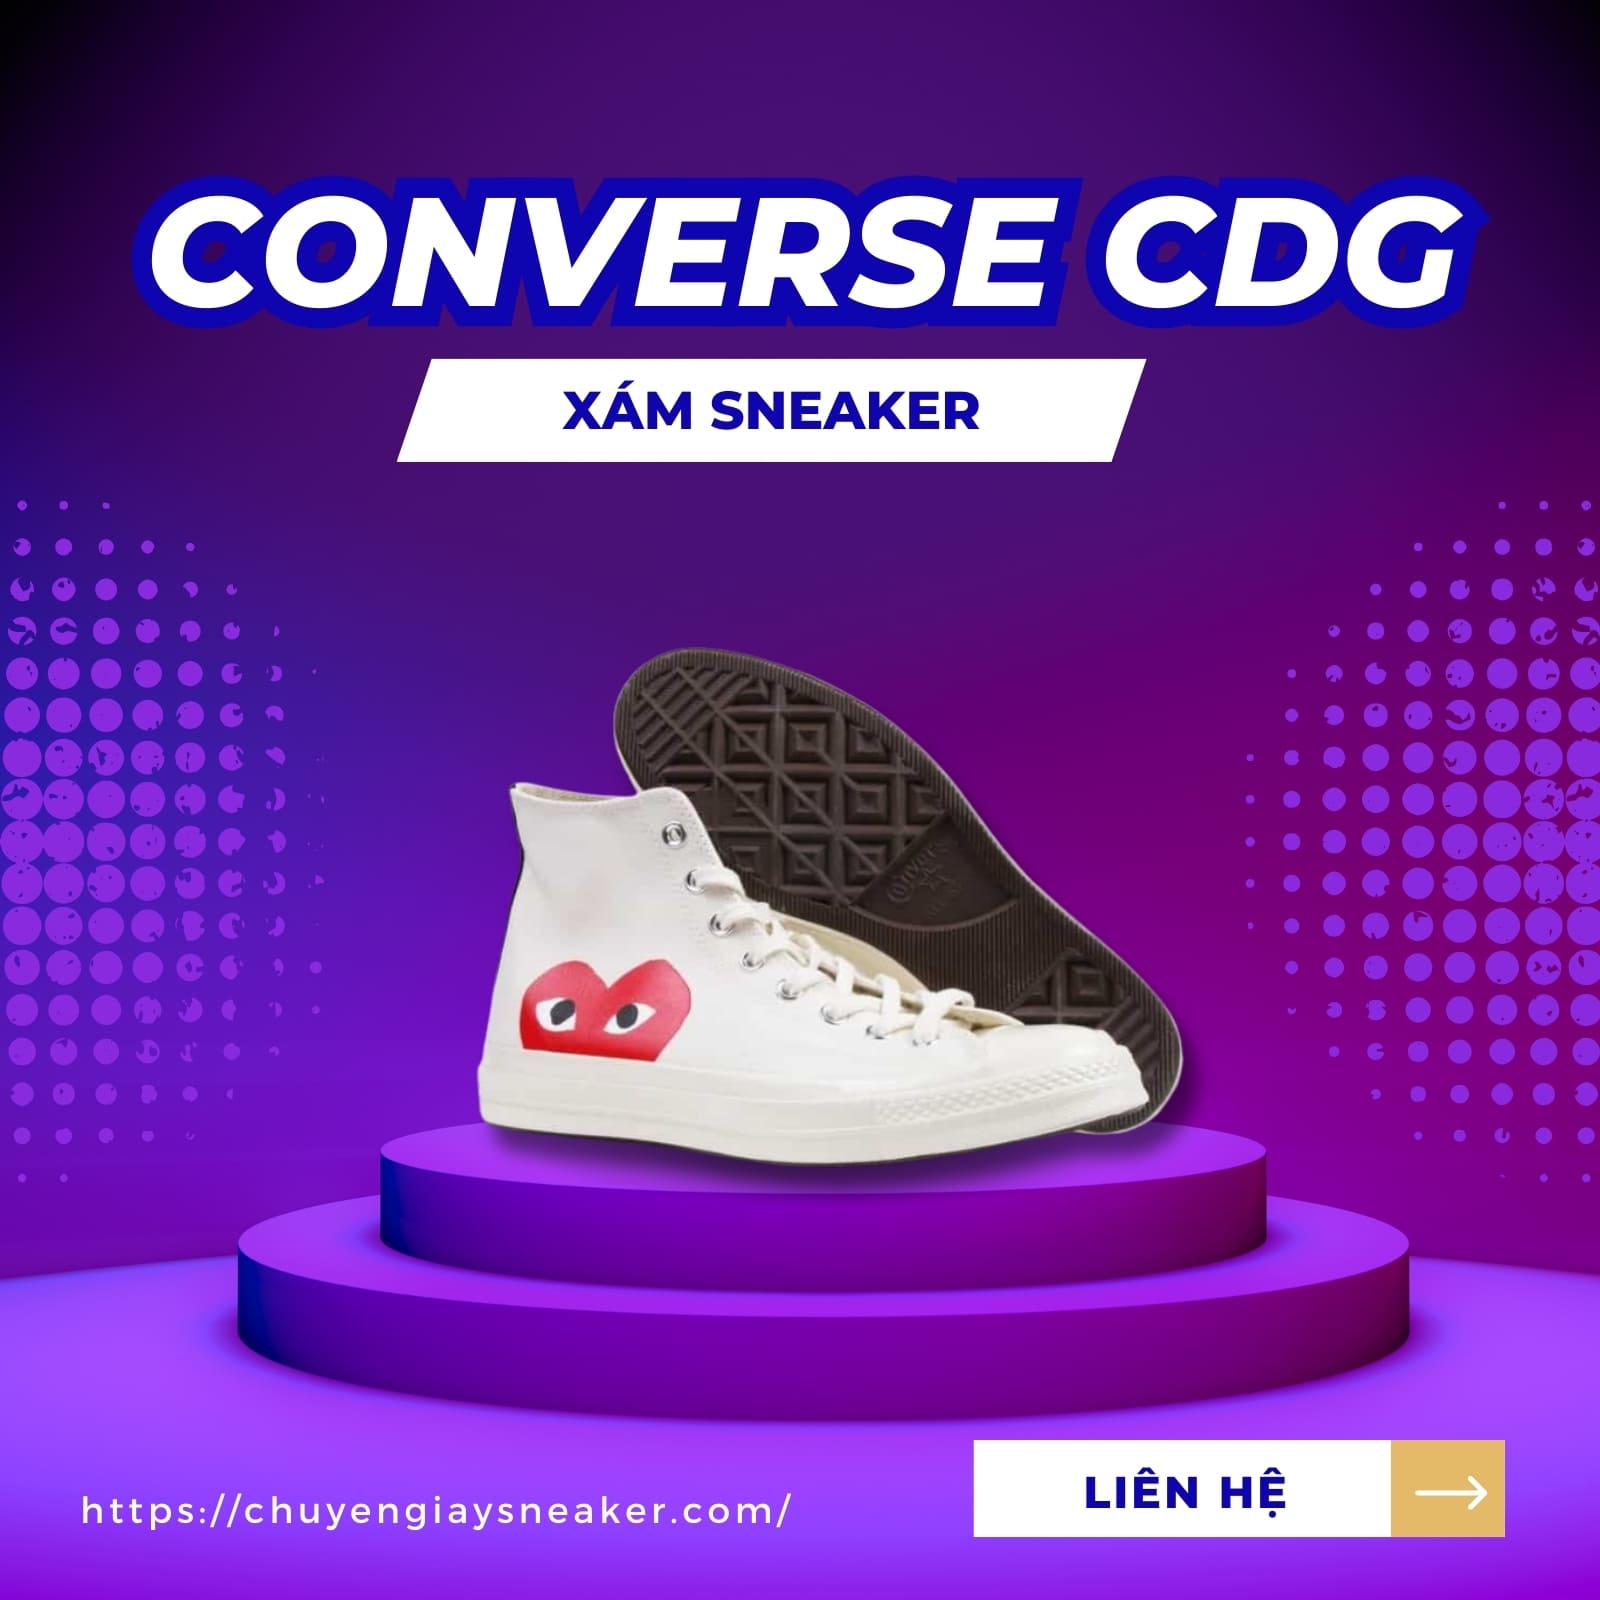 Xám Sneaker - Địa chỉ mua giày Converse CDG rep 11 uy tín